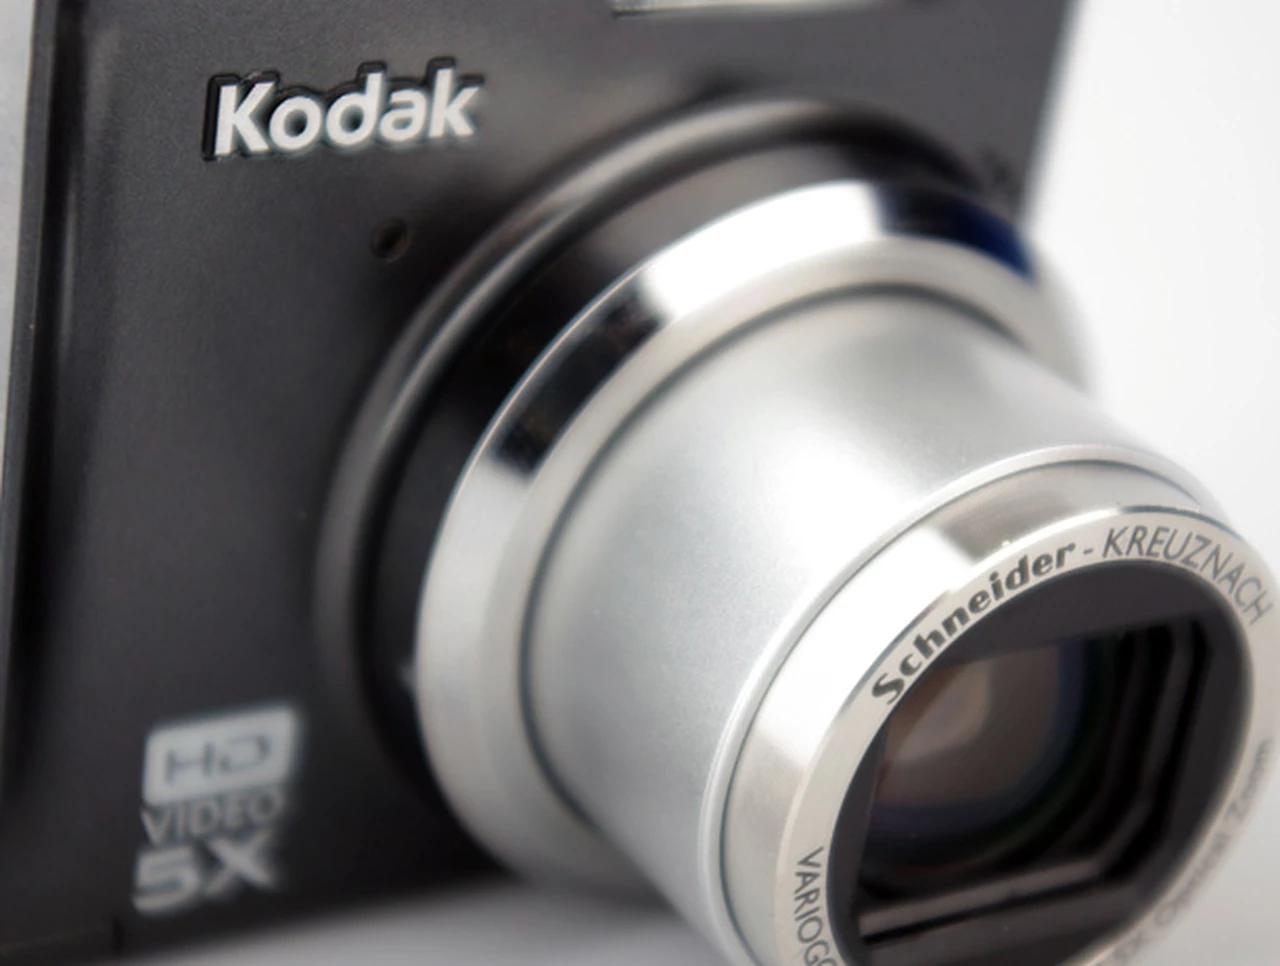 Kodak anunció que dejará el negocio de las cámaras fotográficas